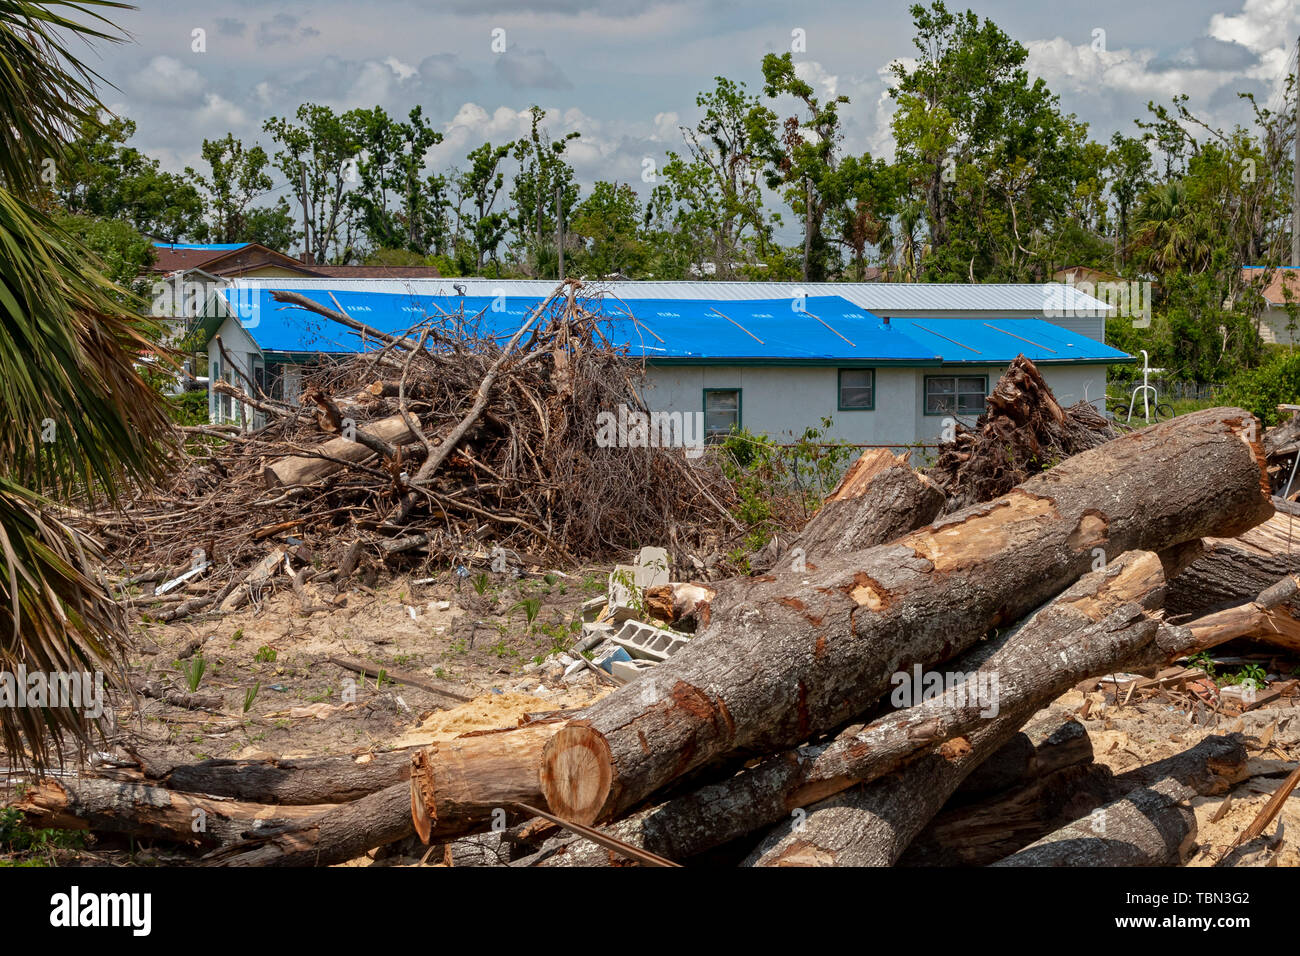 Panama City, Florida - Distruzione da uragano Michael è diffusa sette mesi dopo la categoria 5 tempesta ha colpito la Florida Panhandle. Un blu FEMA Foto Stock